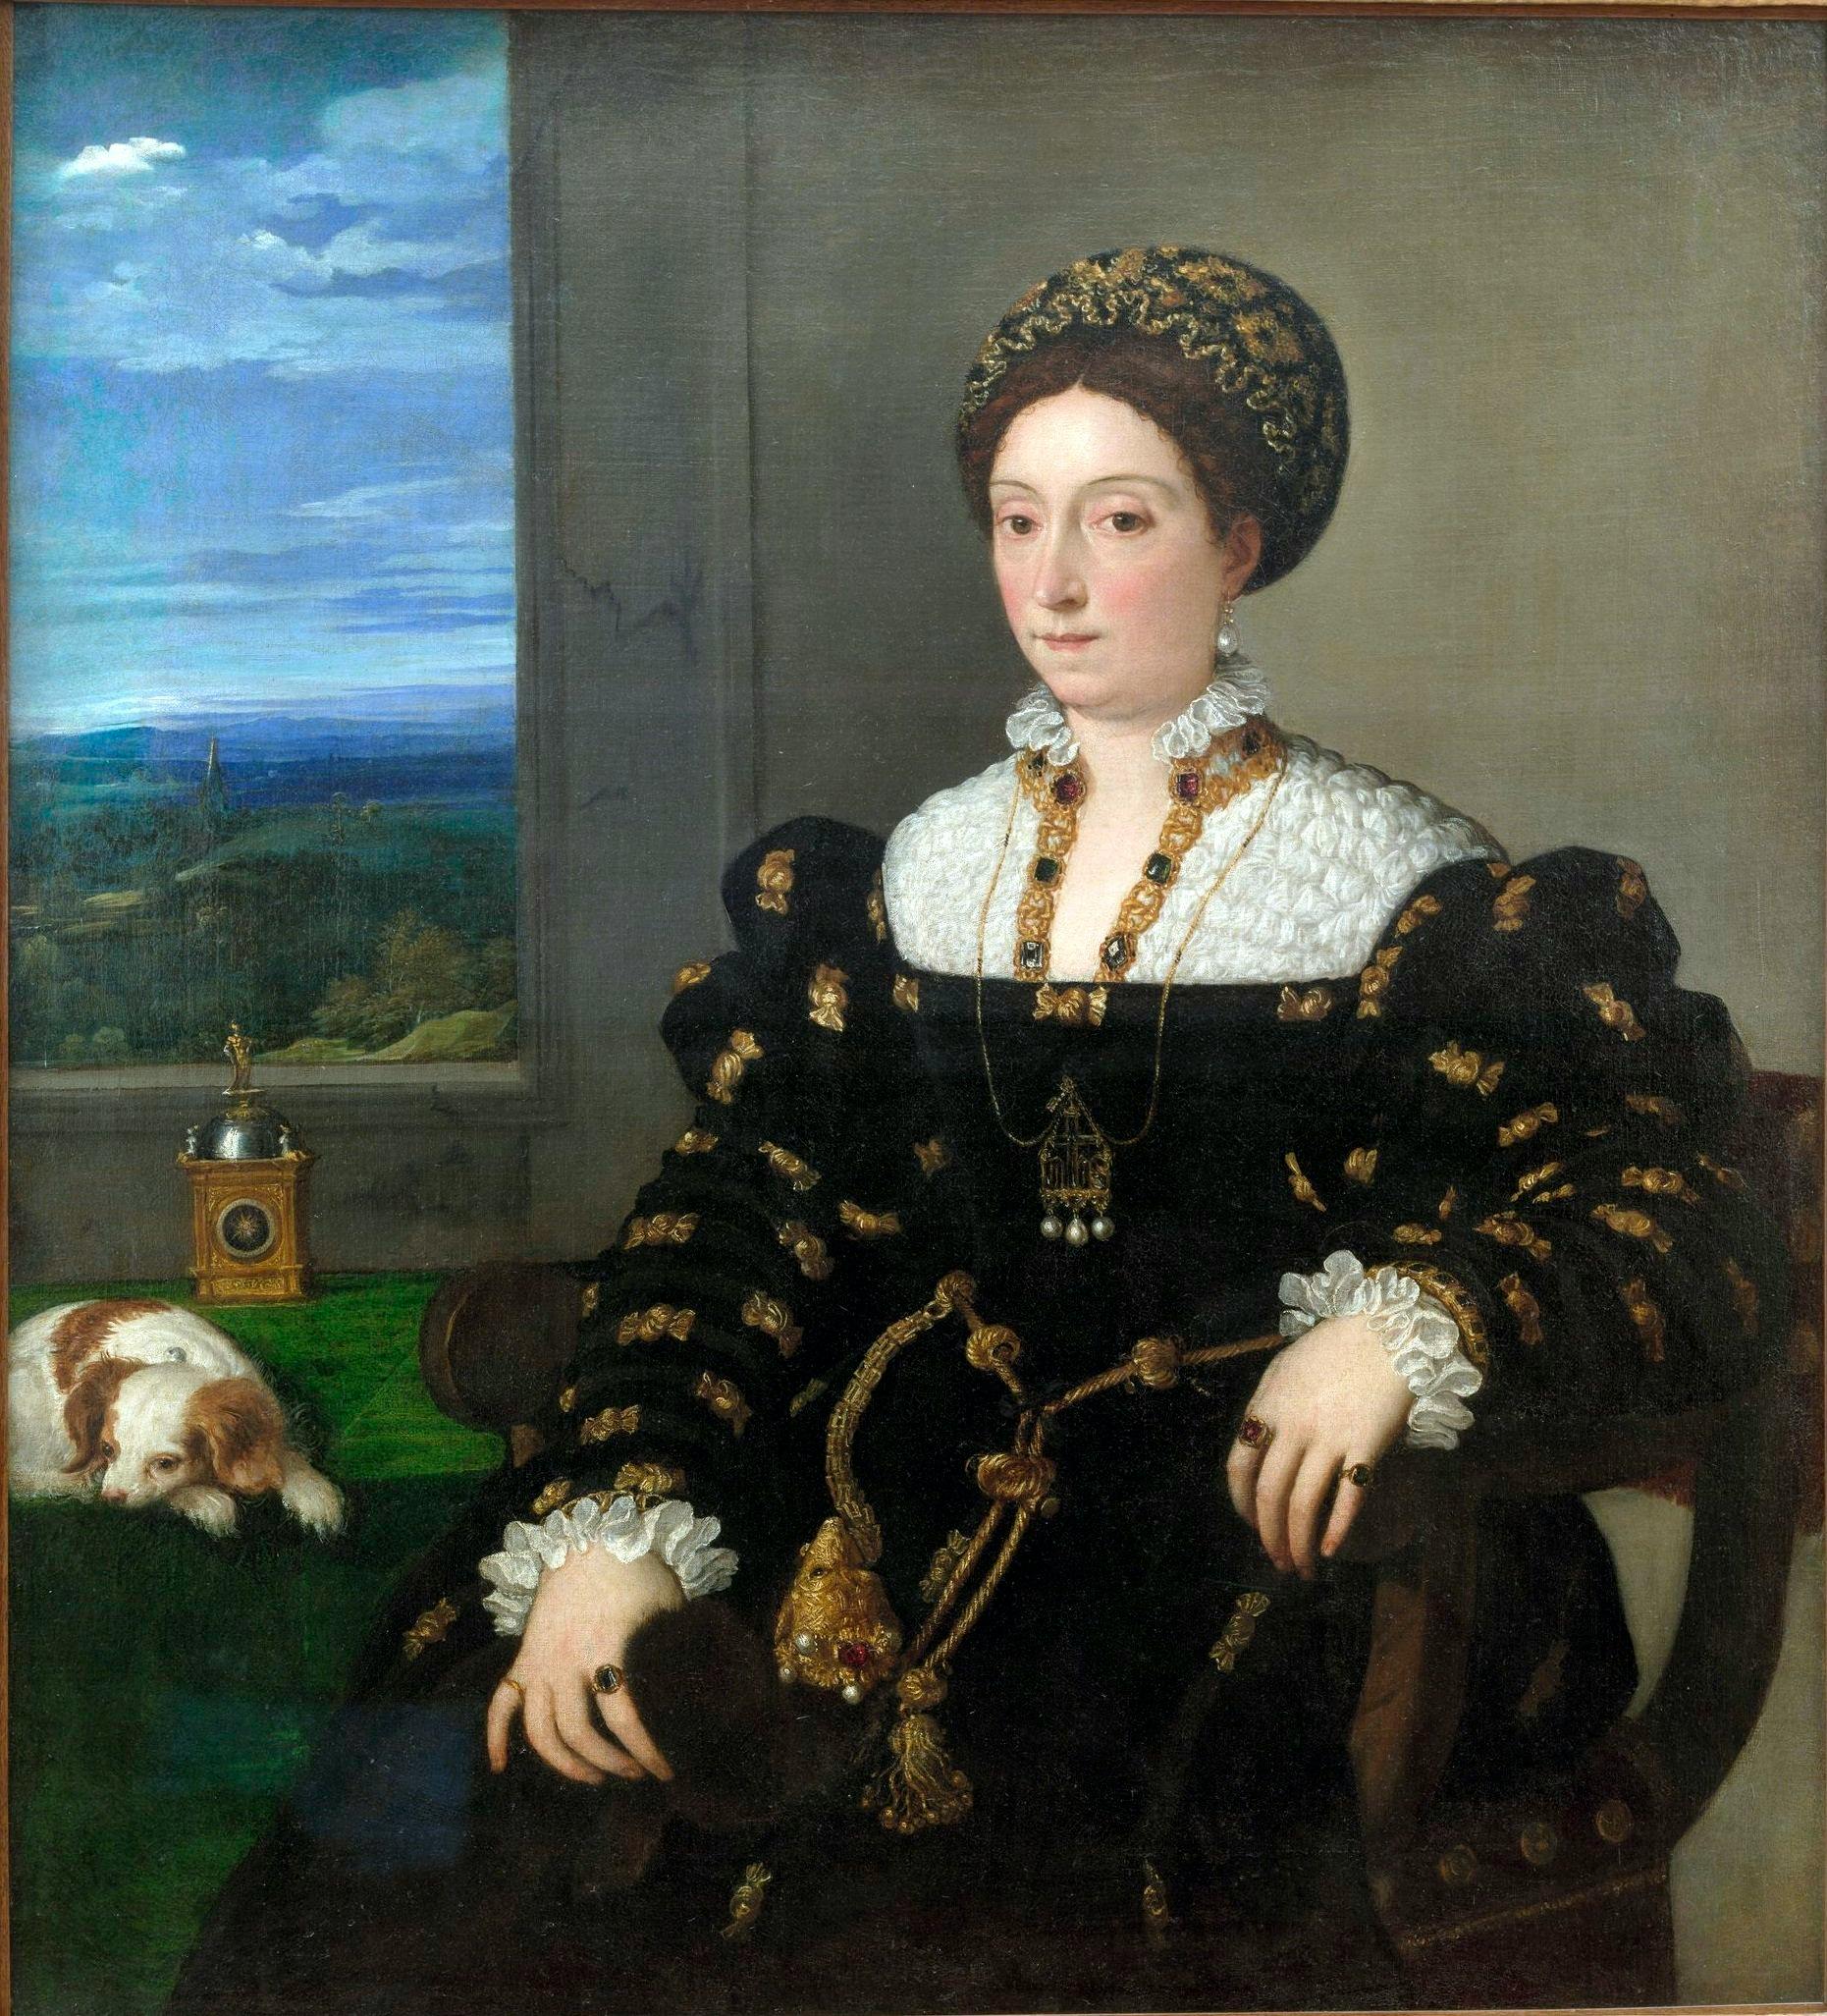 Ritratto di Eleonora Gonzaga, duchessa di Urbino